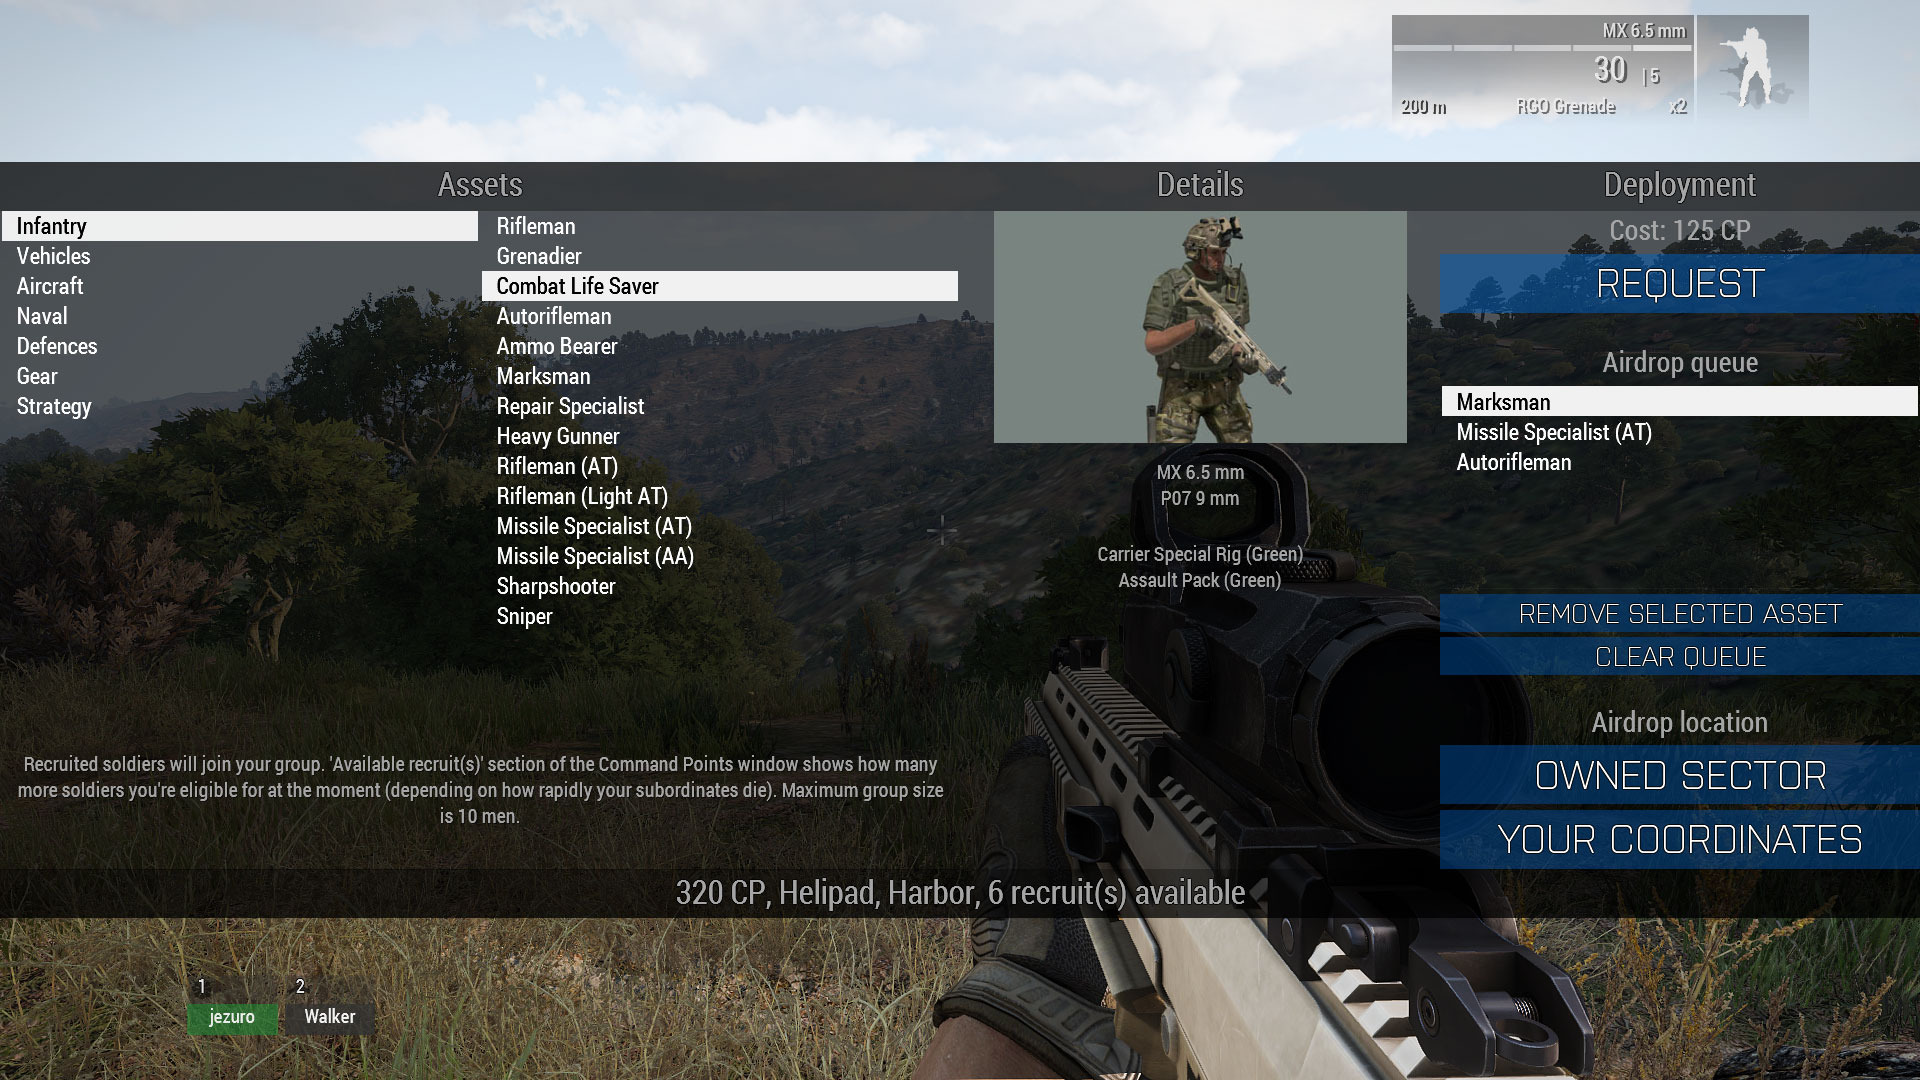 軍事サンドボックス Arma 3 戦略型マルチ対戦 Co Opモード Warlords 近日実装へ シングルオープンワールドシナリオは時期未定に Game Spark 国内 海外ゲーム情報サイト